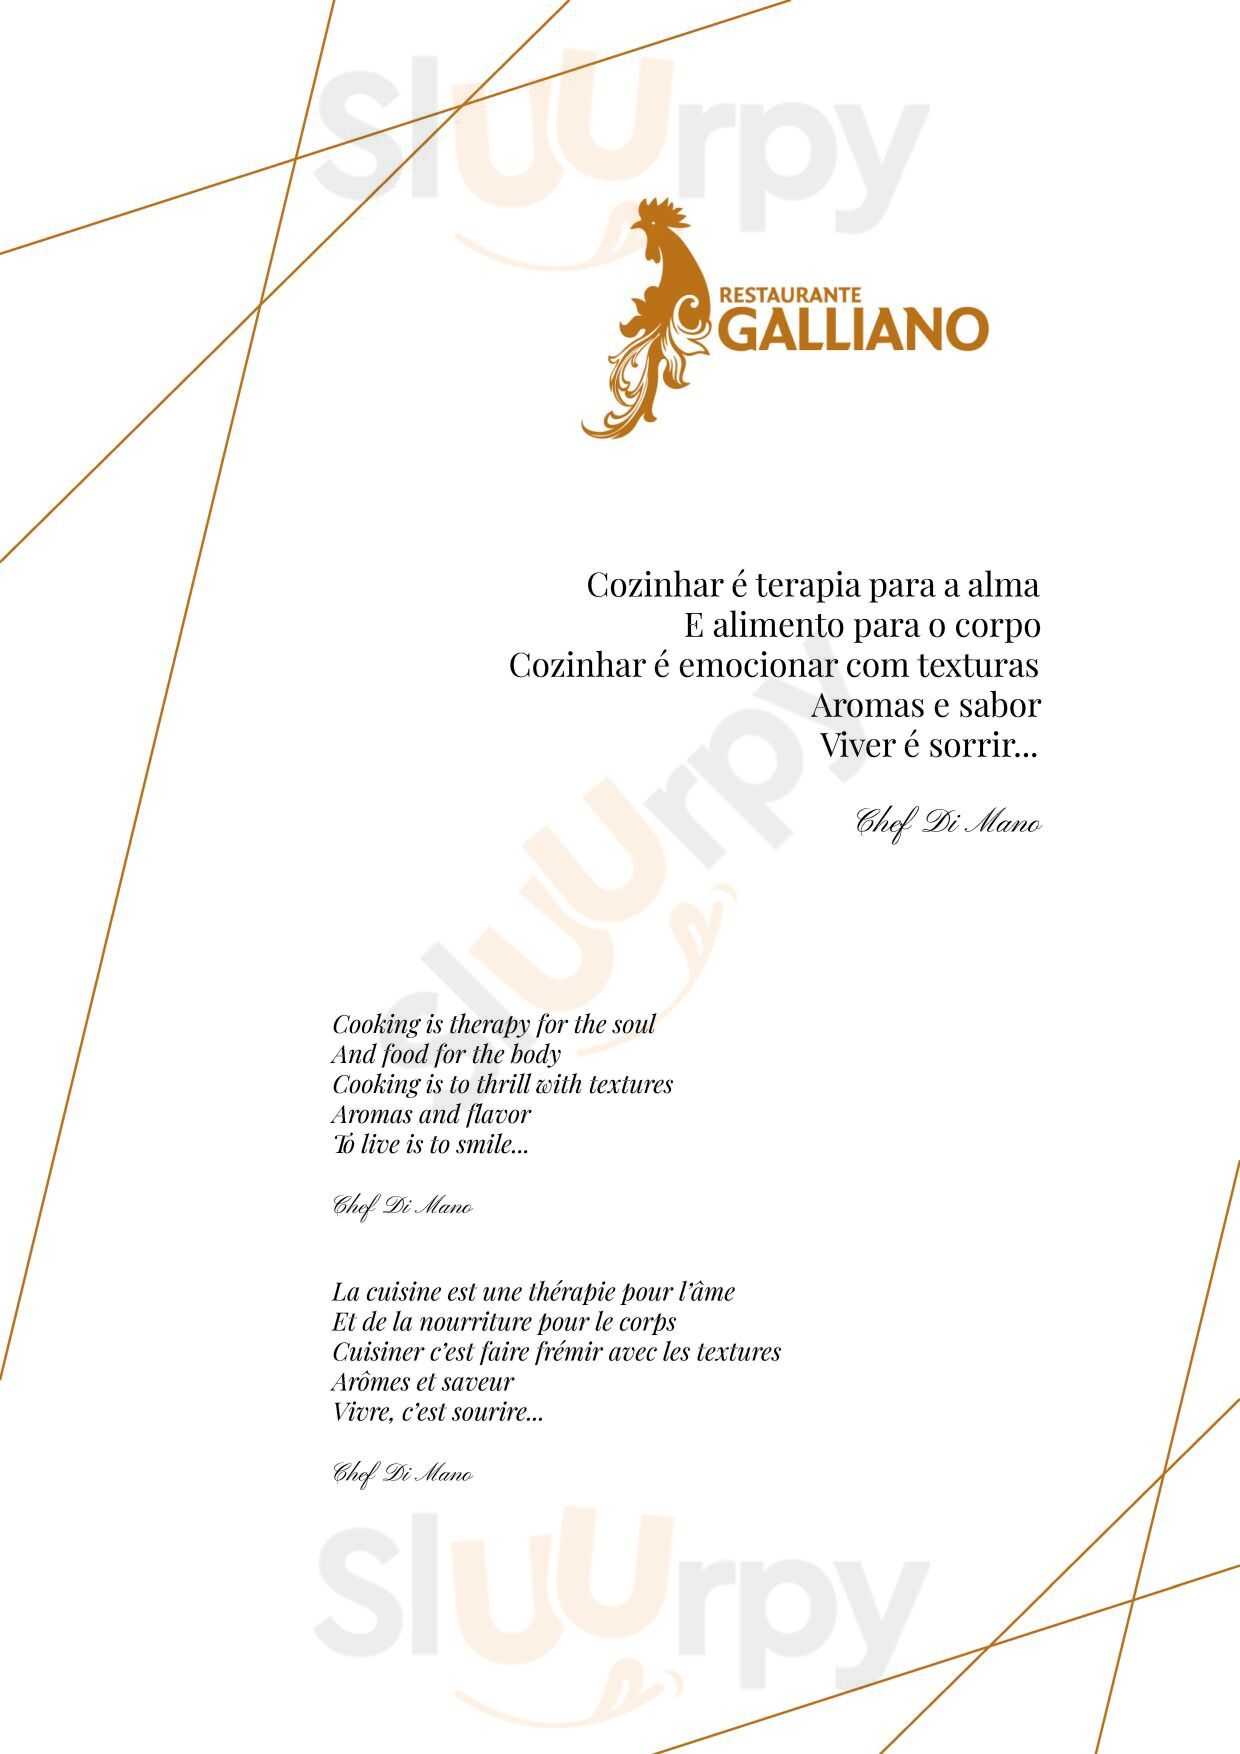 Restaurante Galliano Barcelos Menu - 1